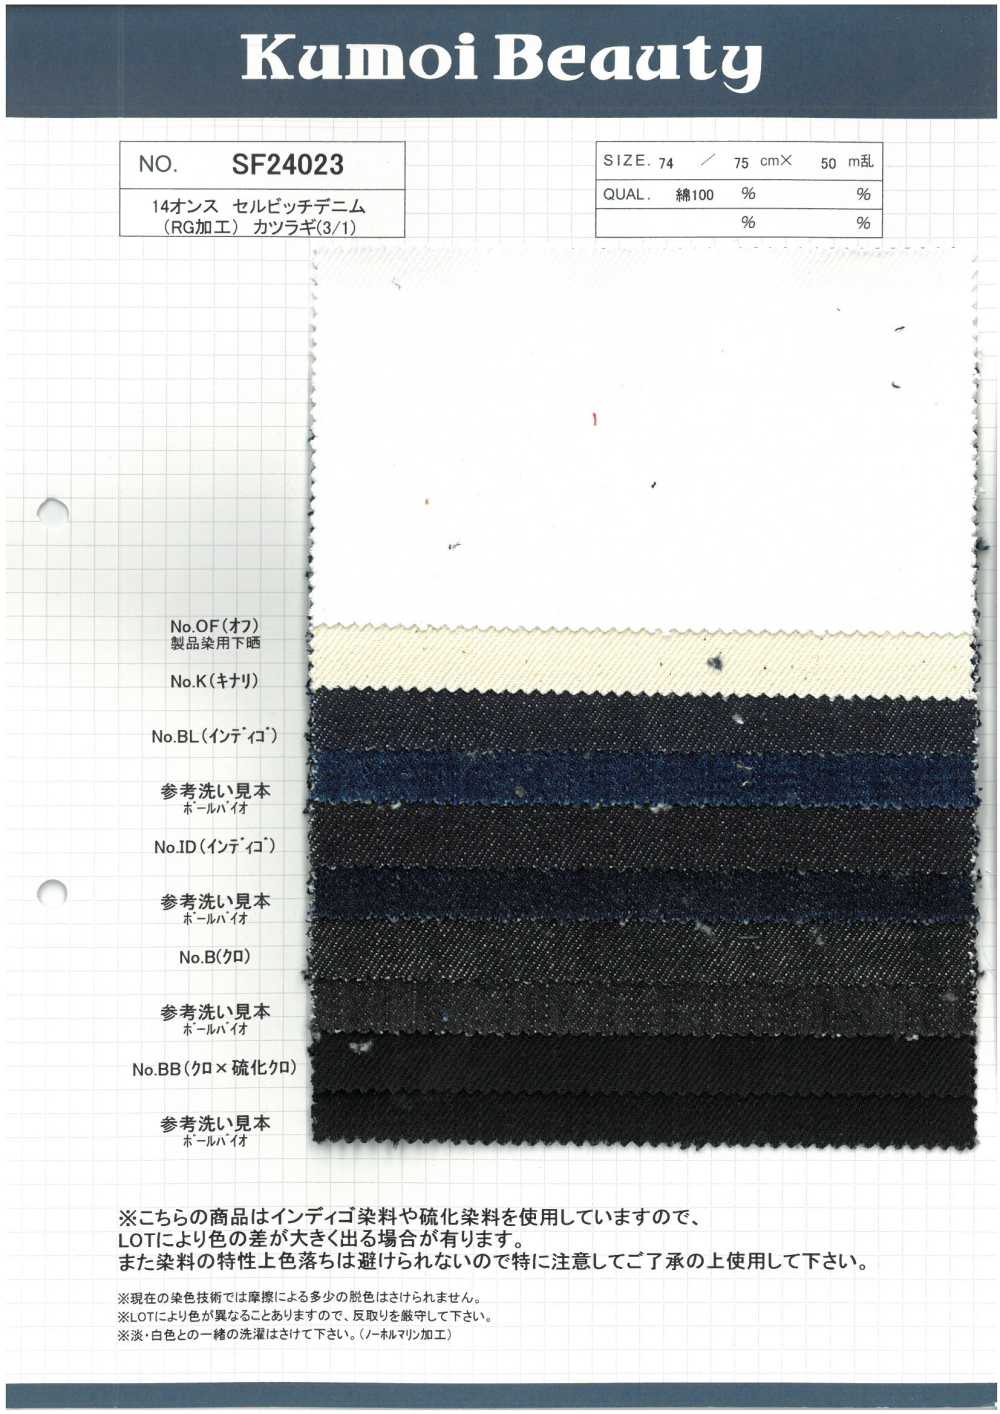 SF24023 14 Oz Selvedge Denim (Traitement RG) Foret (3/1)[Fabrication De Textile] Kumoi Beauty (Chubu Velours Côtelé)